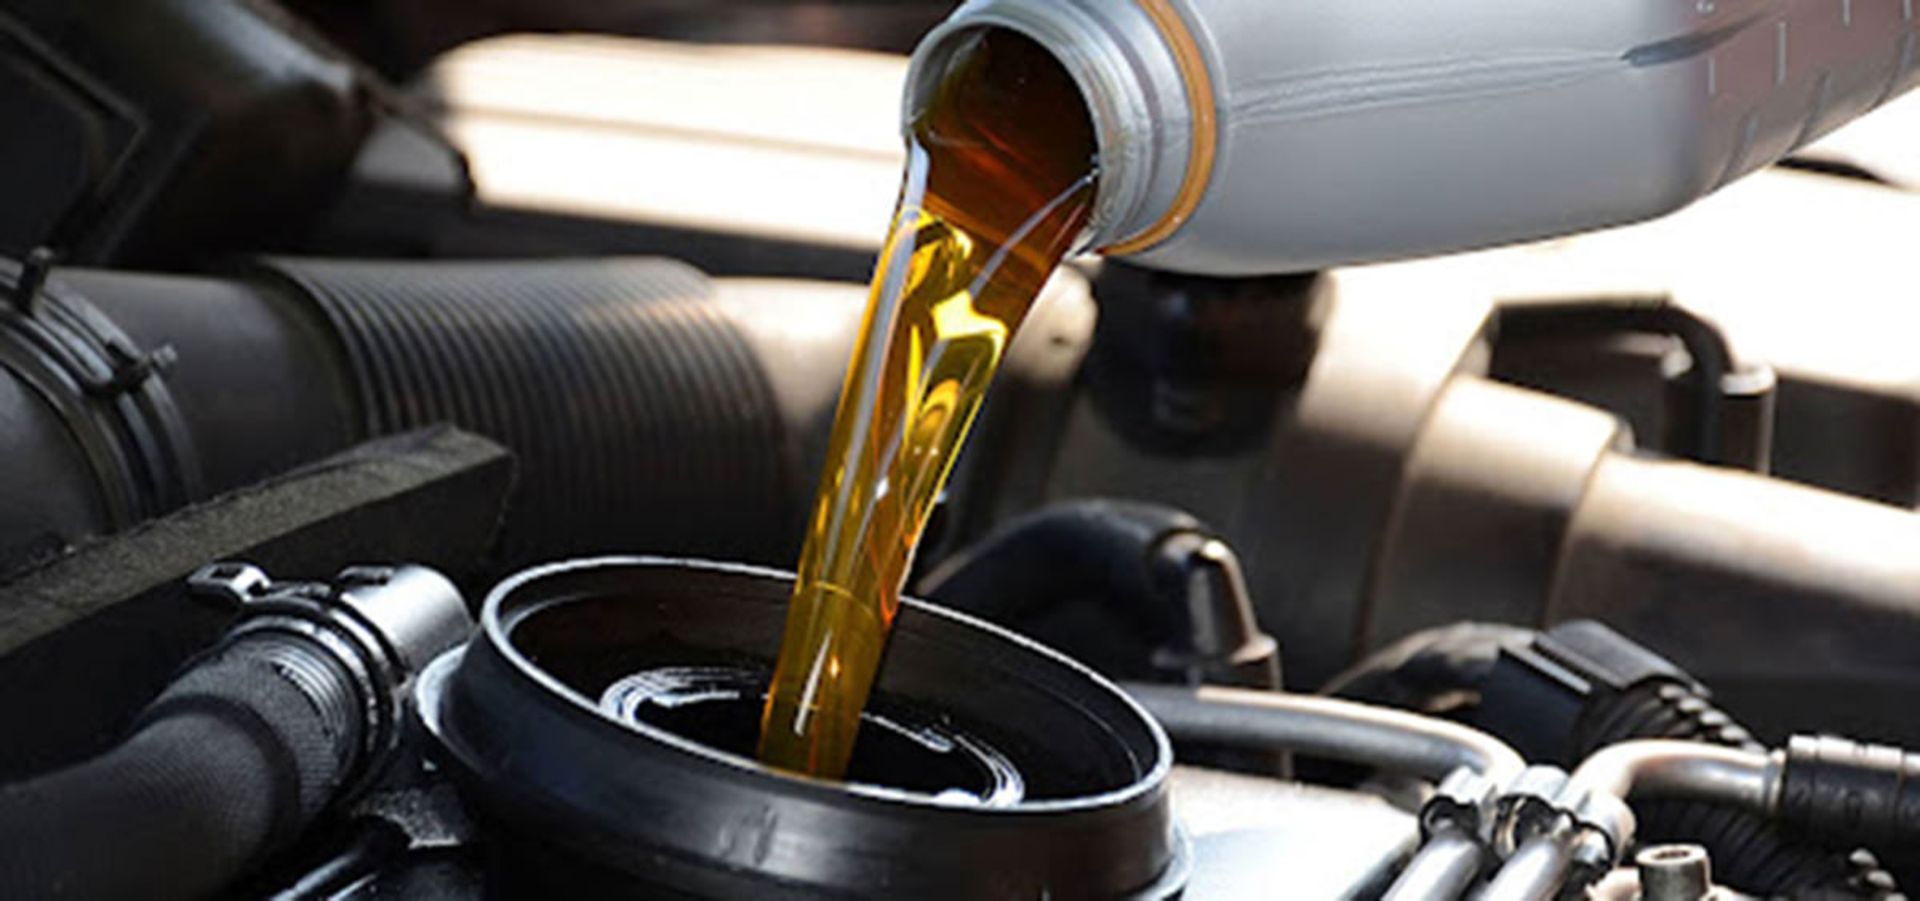 روغن موتور خودرو / Car Engine Oil در بسته بندی 